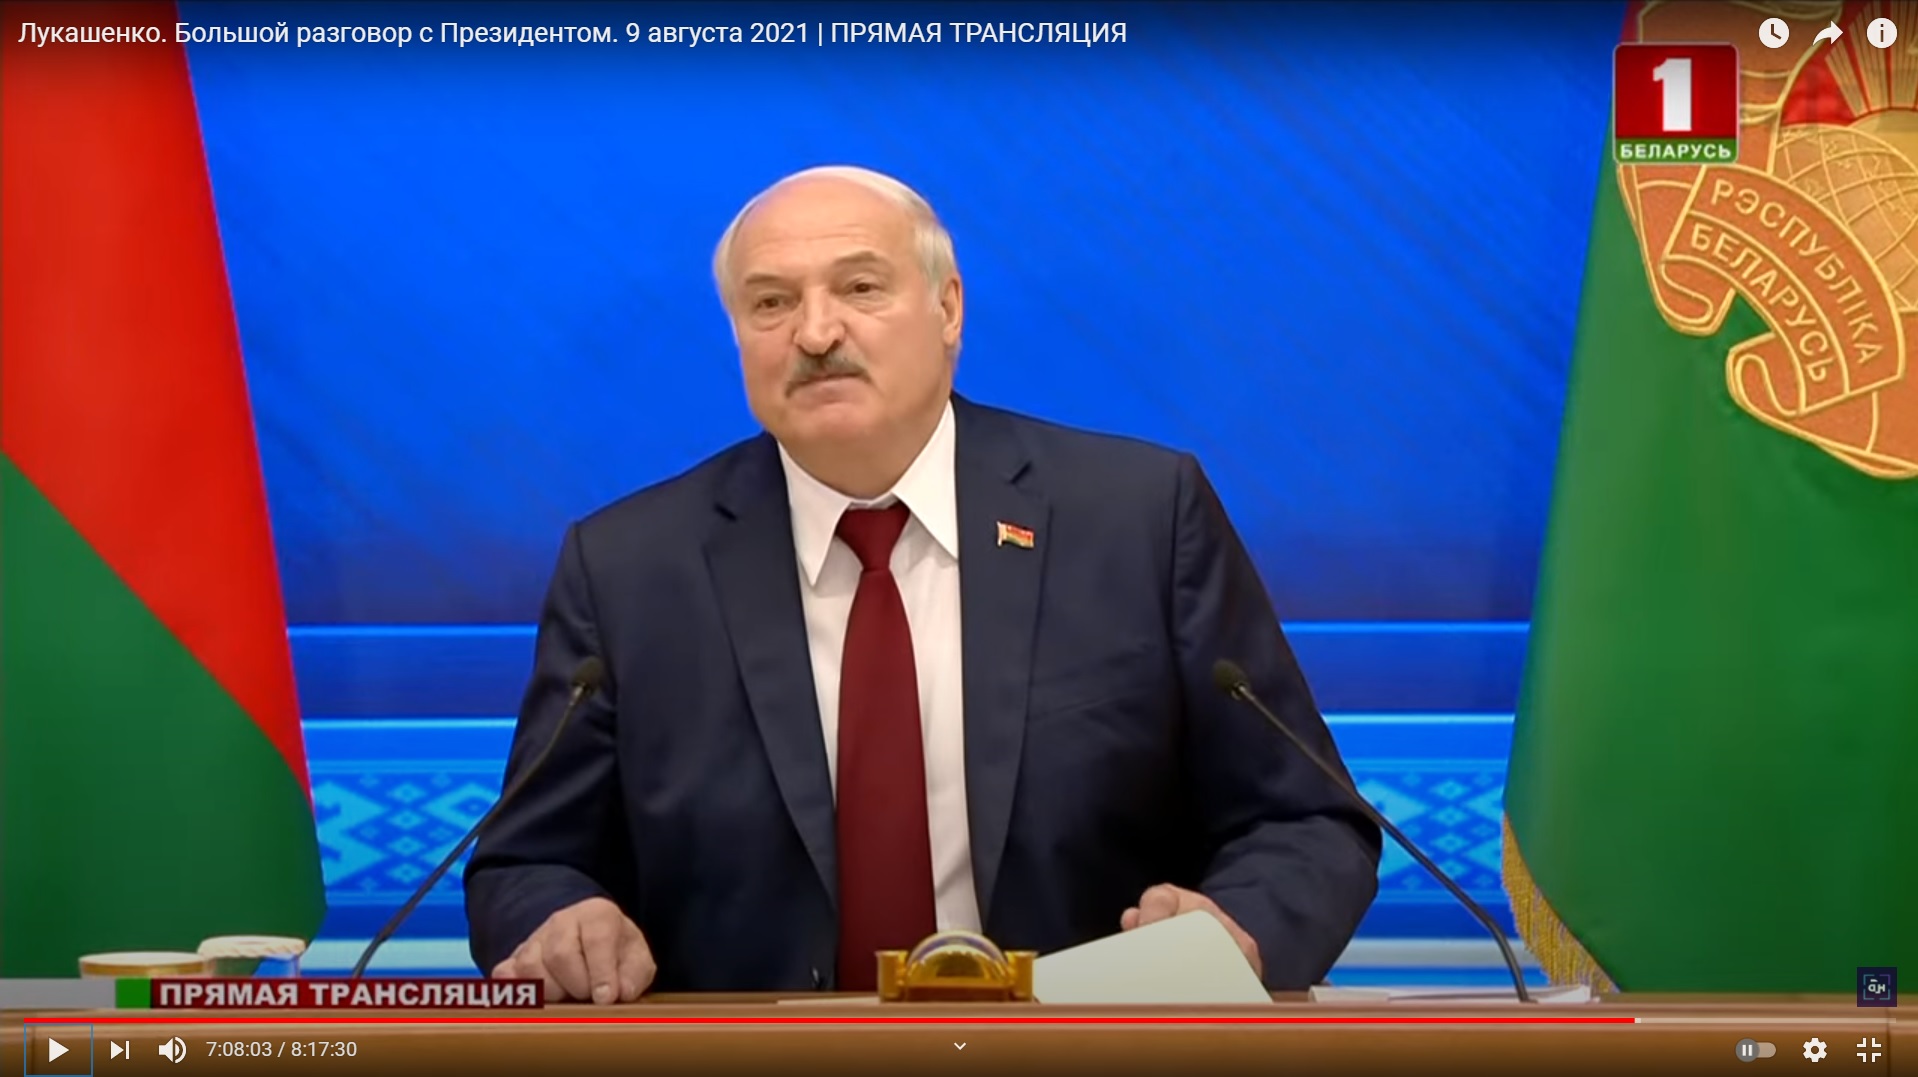 Страх и бессилие: поведенческий аналитик о манере выступлений Лукашенко